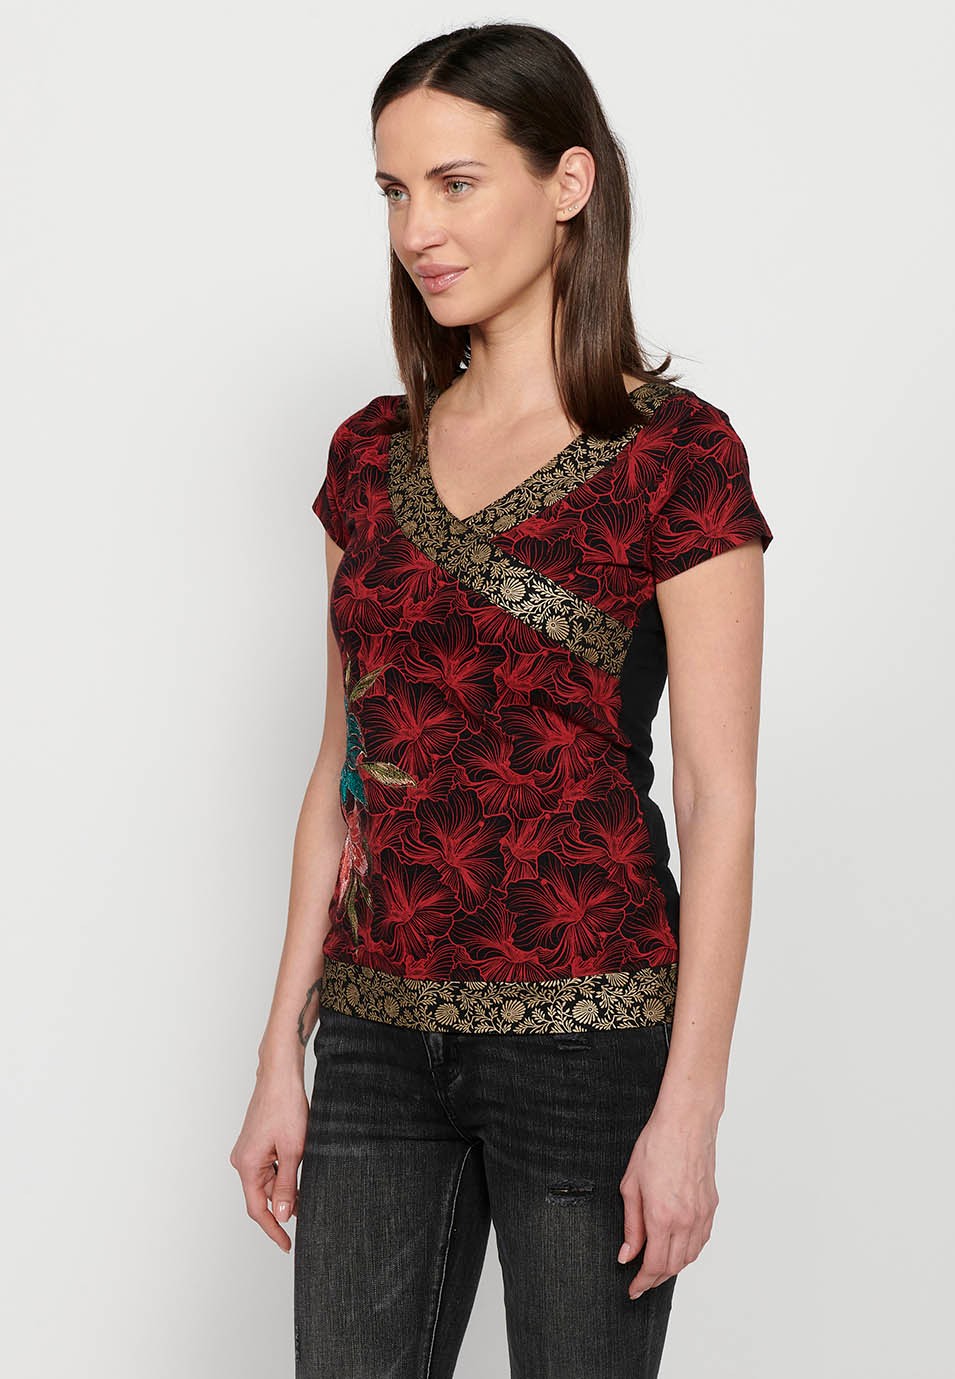 Camiseta de manga corta, cuello en pico y detalles bordados florales multicolor para mujer